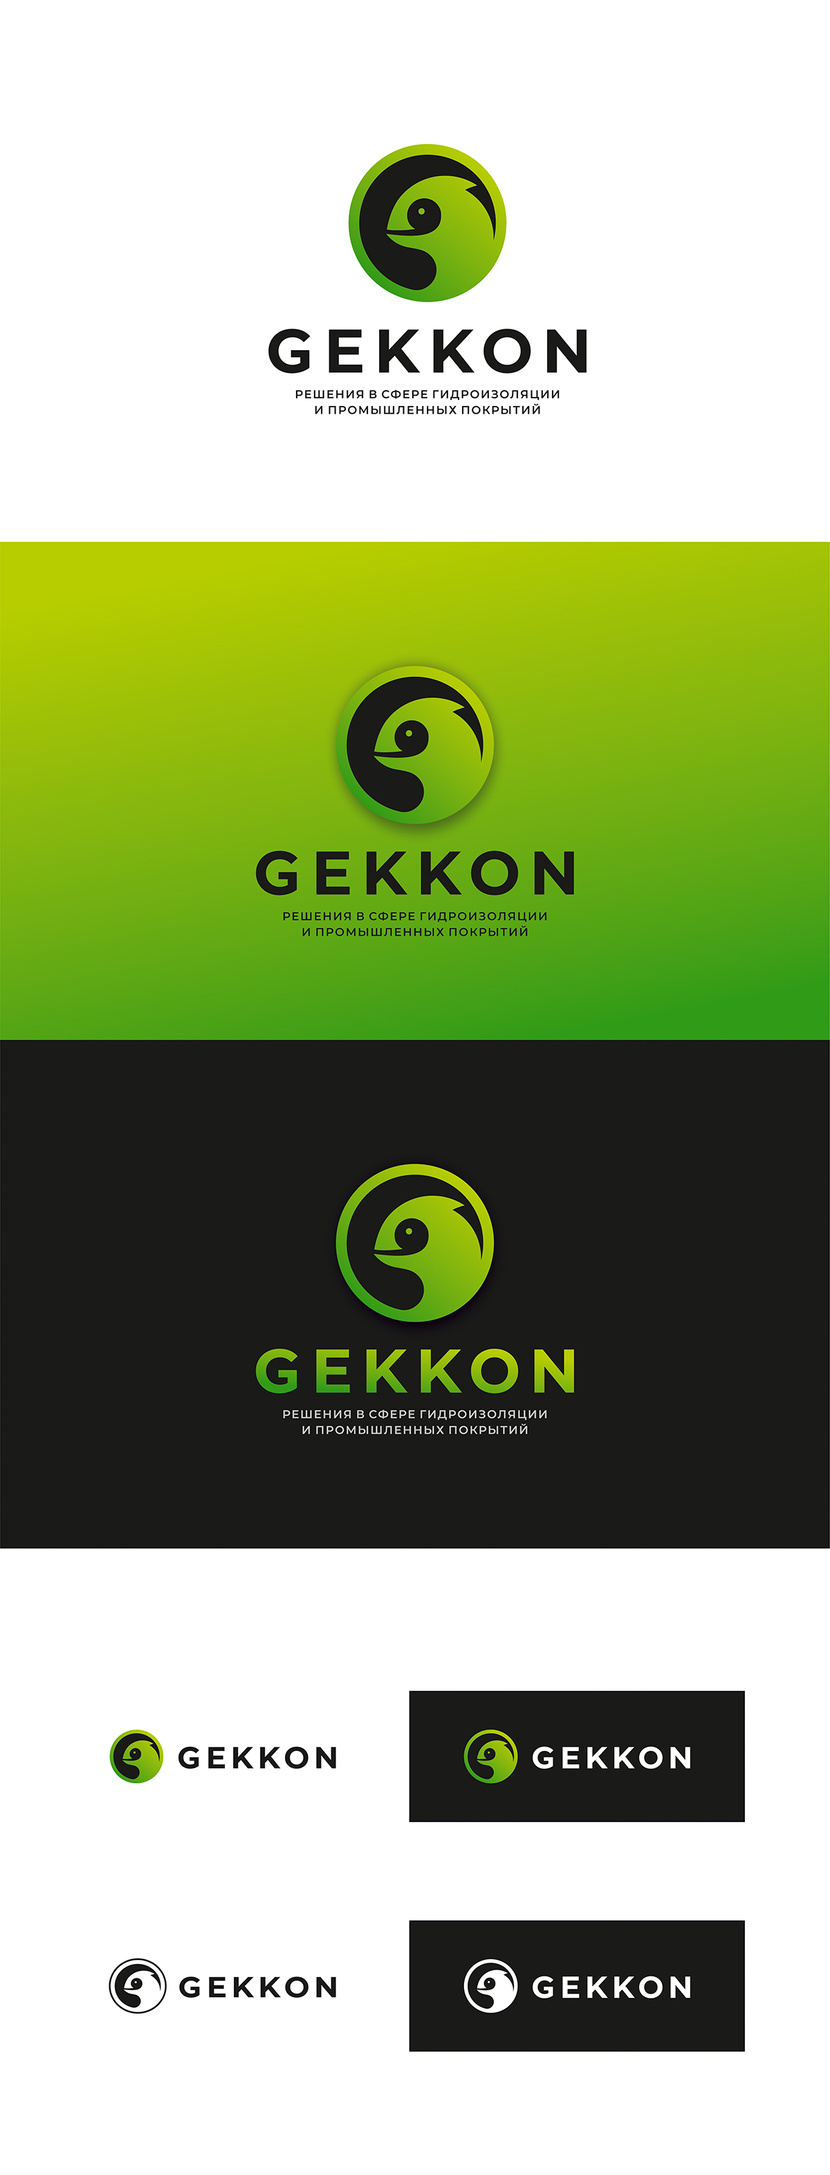 Доработанная версия логотипа + чёрно-белый вариант Логотип для производства полиуретановых материалов марки "Gekkon"